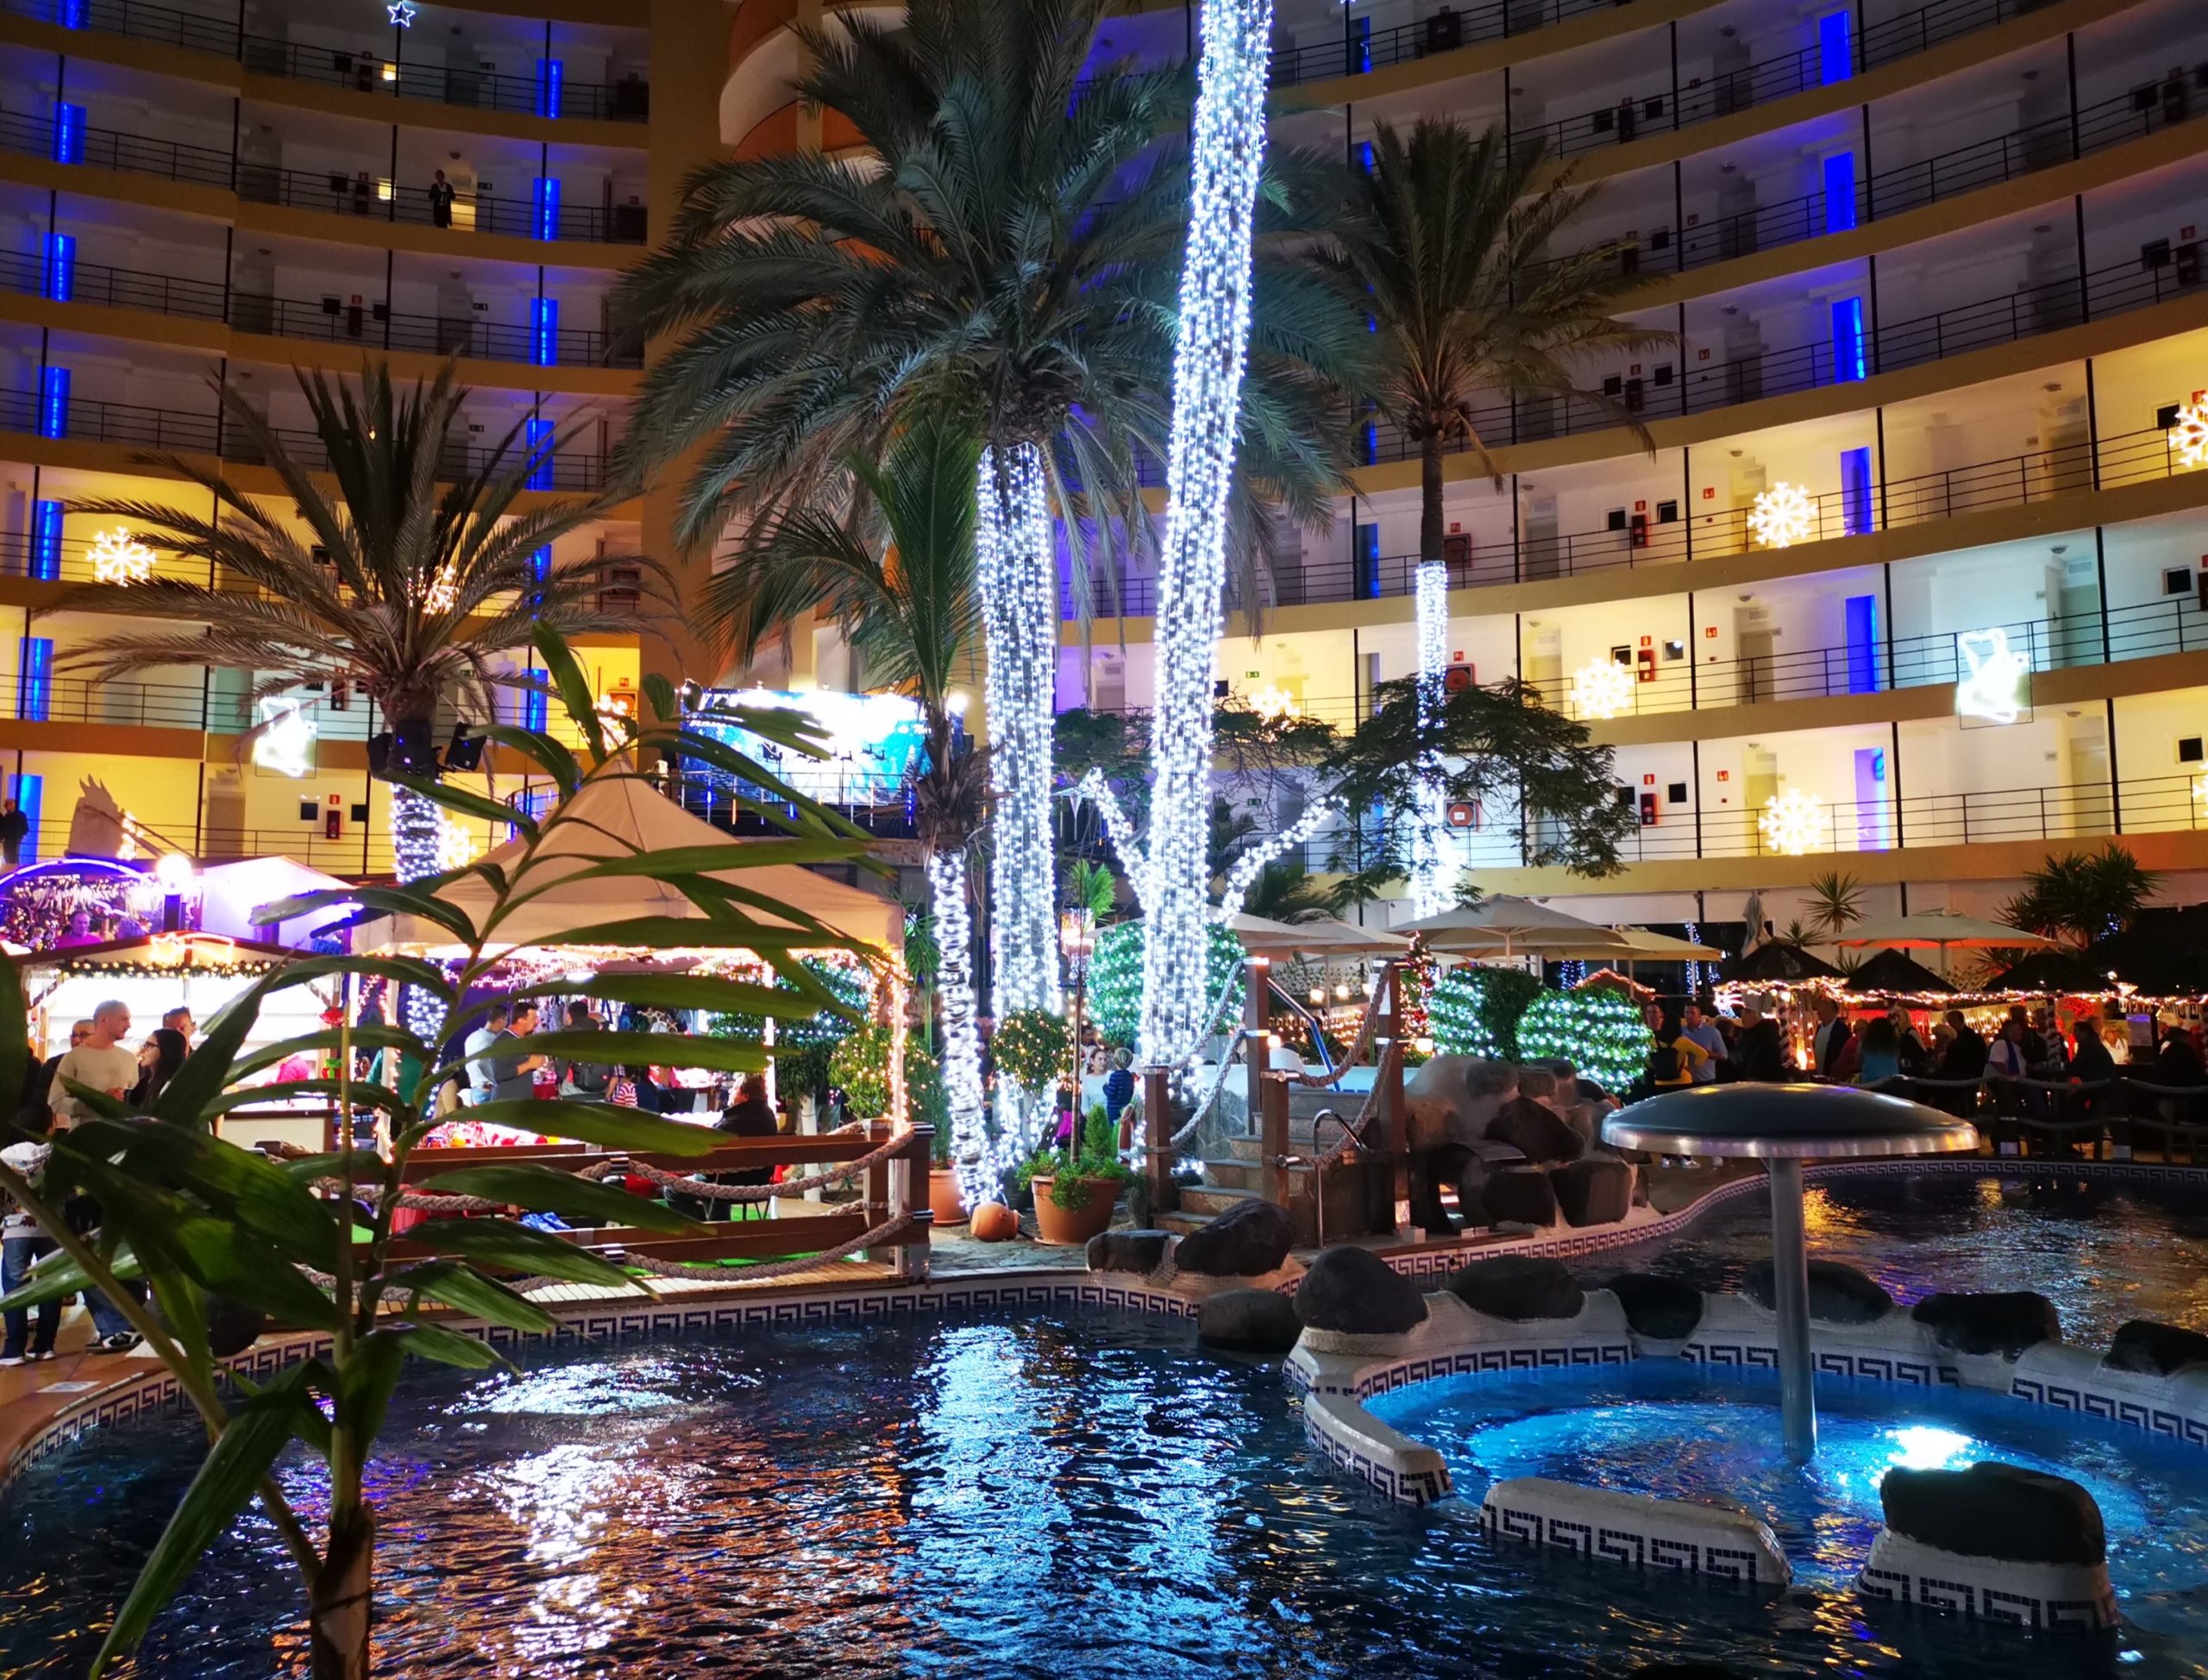 Blick vom Pool auf den Weihnachtsmarkt, im Hintergrund Palmen  mit Licht dekoriert